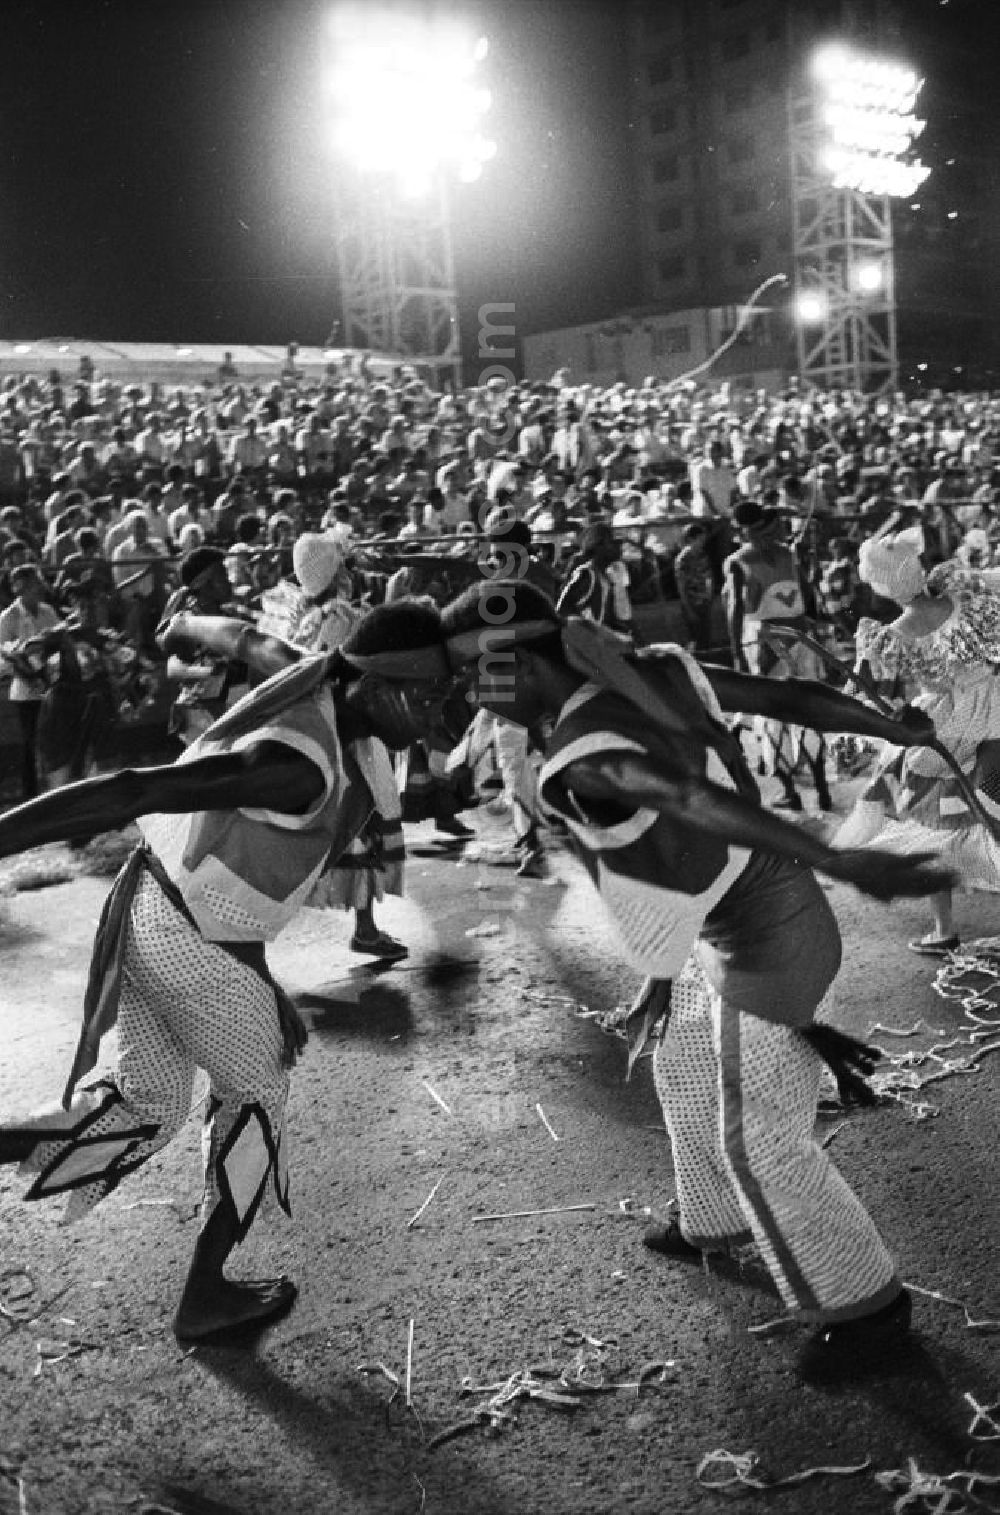 GDR photo archive: Havanna - Karneval während der XI. Weltfestspiele der Jugend und Studenten vom 28.07. - 05.08.1978. Im Fokus zwei Tänzer, die einander umkreisen. Im Hintergrund: vollbesetzte Zuschauertribünen. Karneval hat auf Kuba eine lange Tradition, besonders in Santiago de Cuba. Er verschmilzt karibische, brasilianische und afrikanische Einflüsse. Die Weltfestspiele standen unter dem Motto: Für antiimperialistische Solidarität, Frieden und Freundschaft. 18.500 Jugendliche aus 145 Ländern nahmen teil, darunter 20